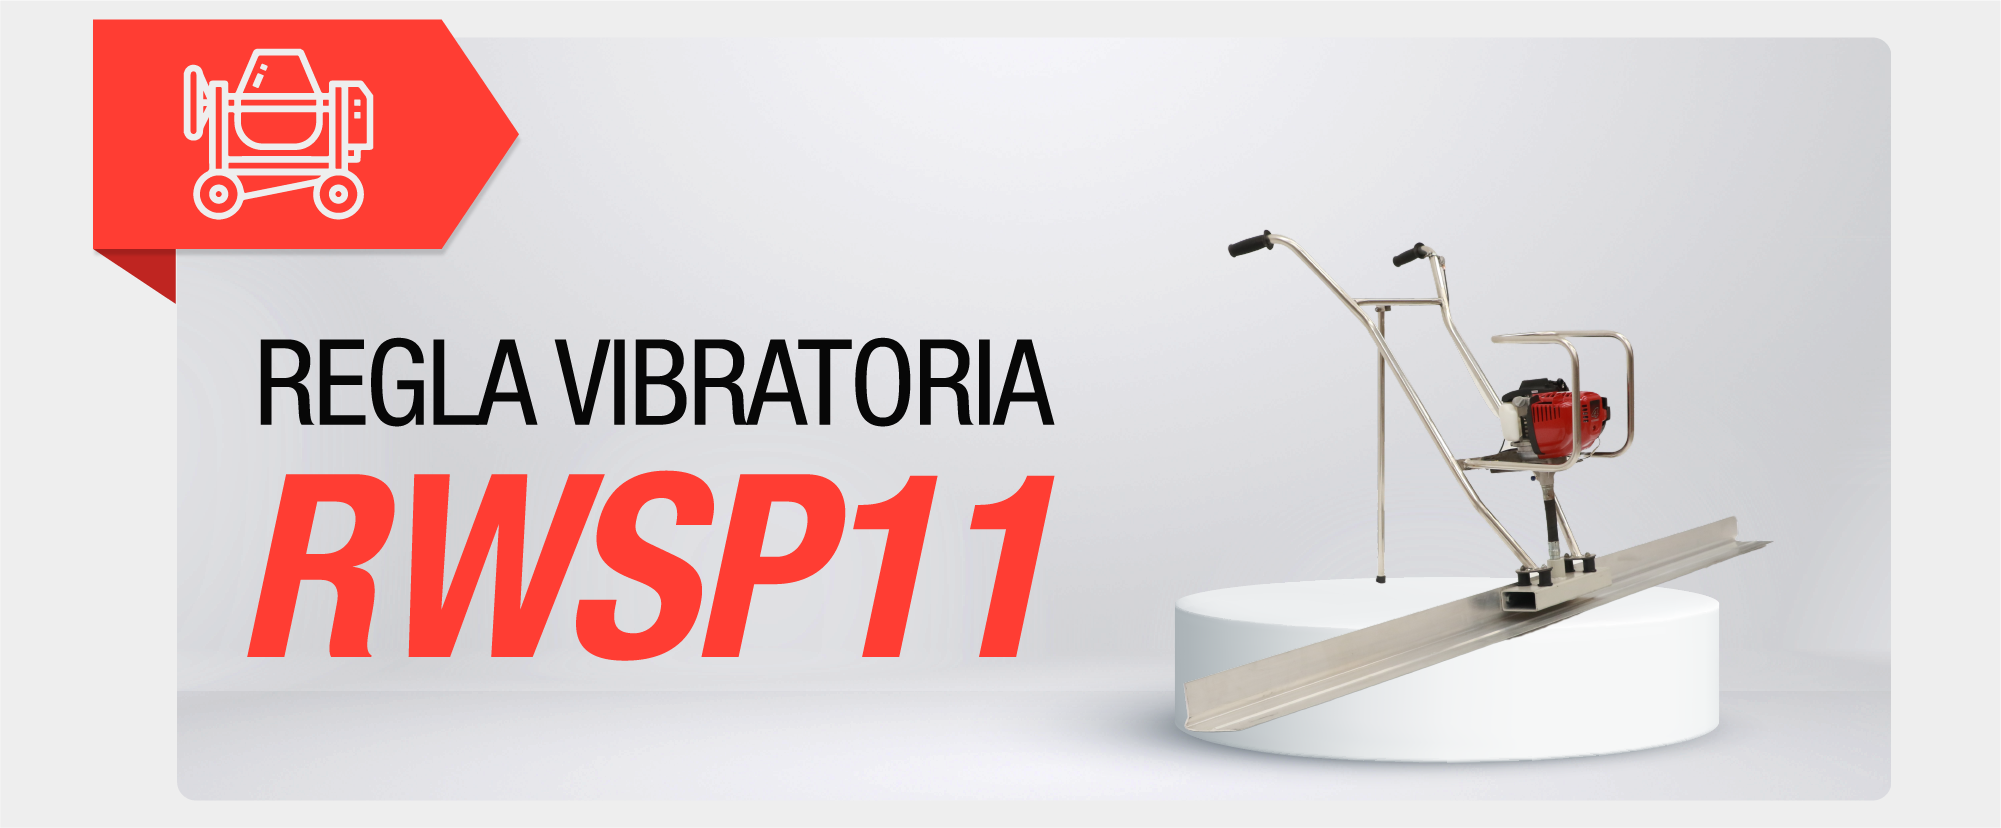 Regla vibratoria RWSP11 CON-M003